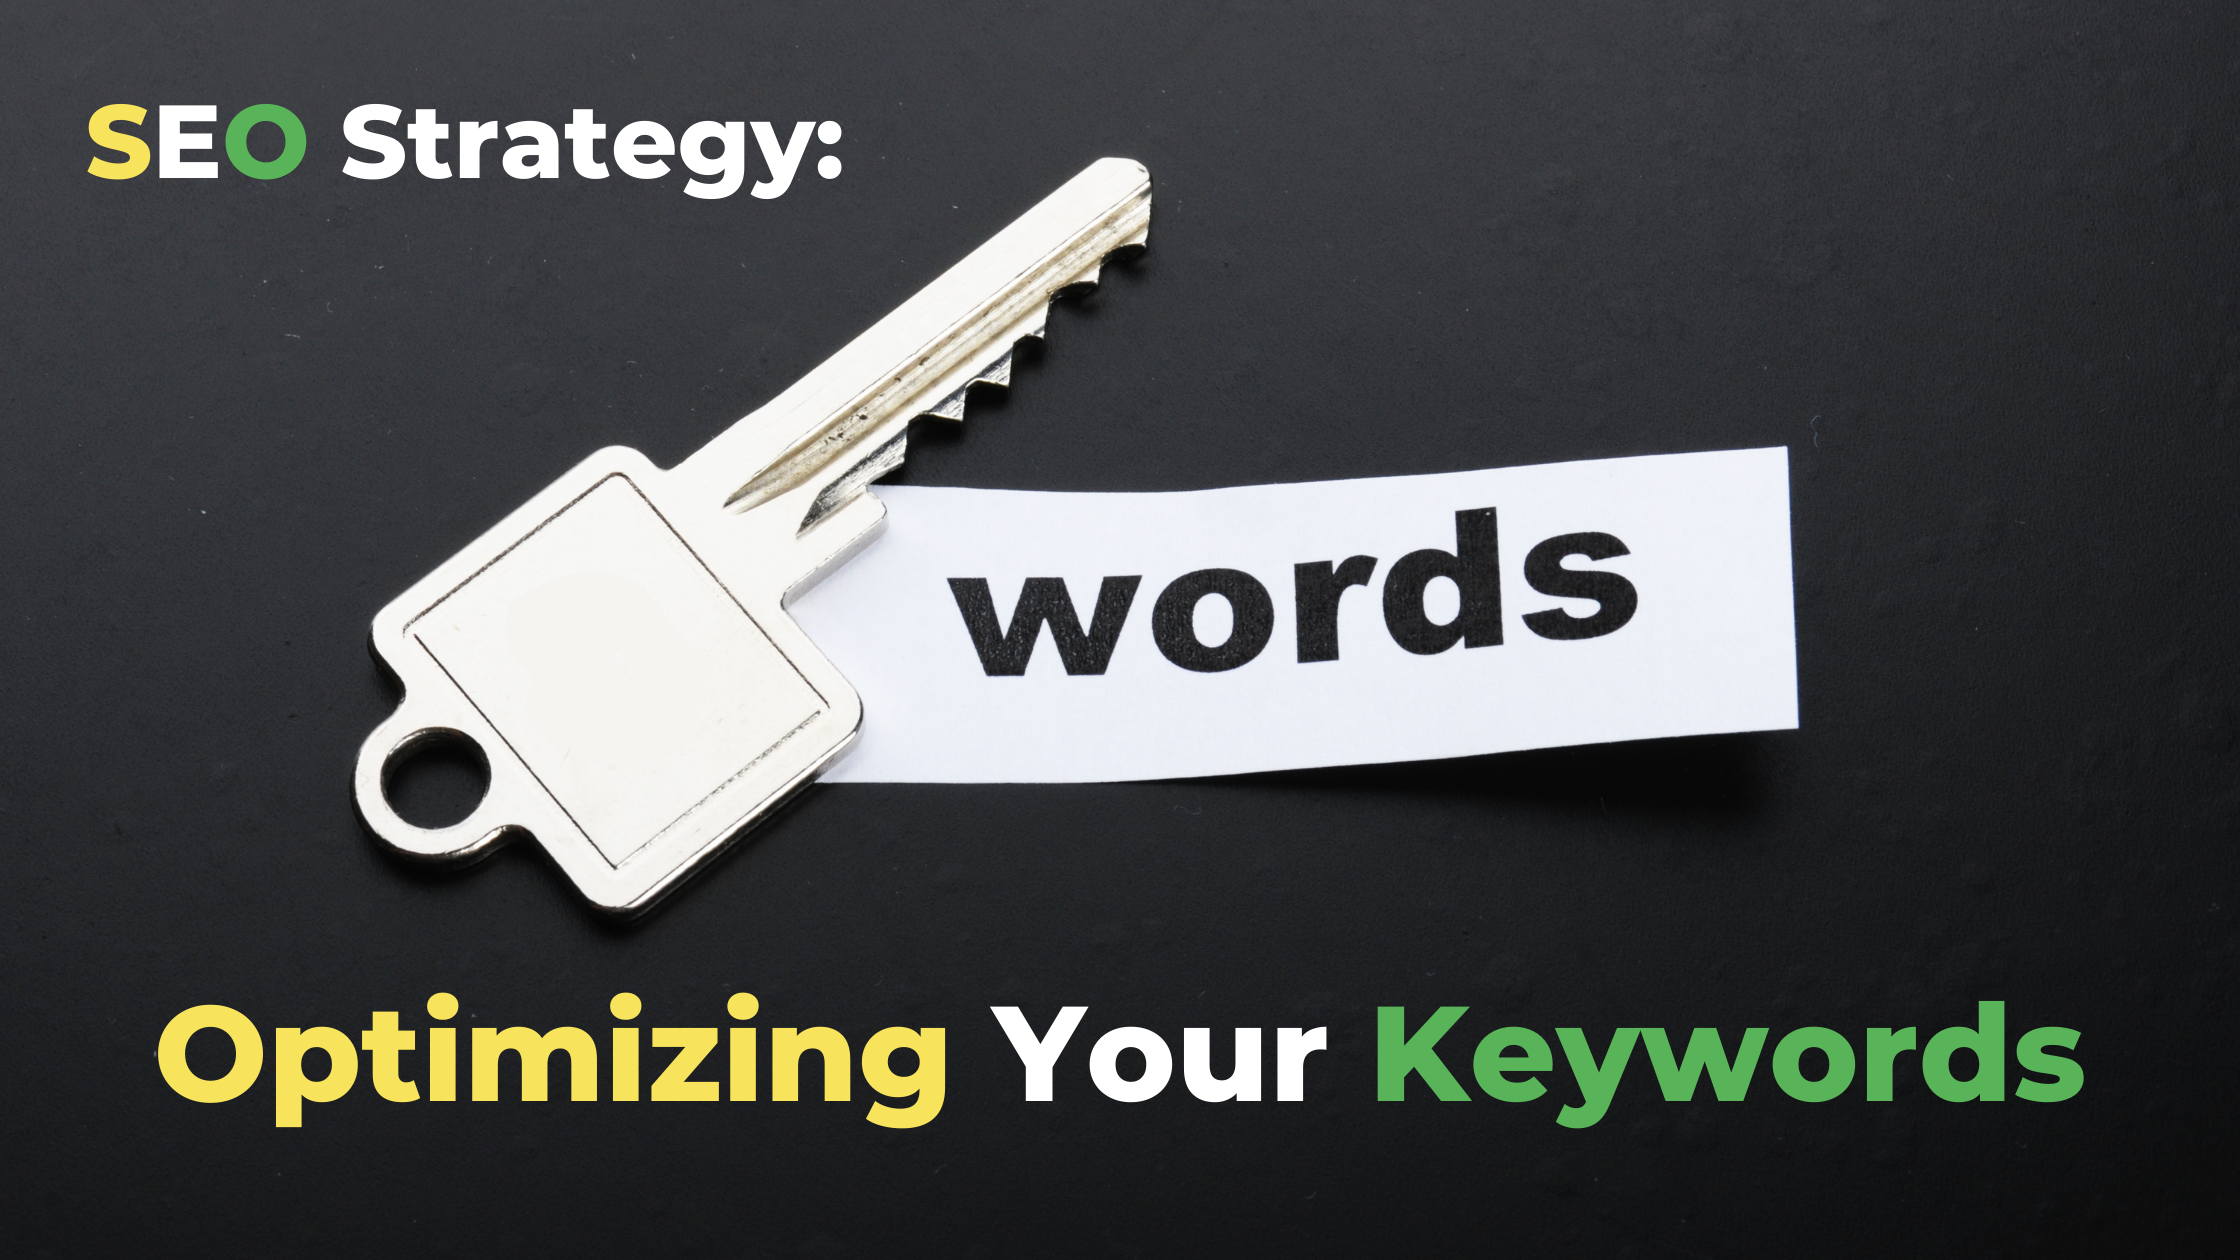 SEO Strategy: Optimizing Your Keywords